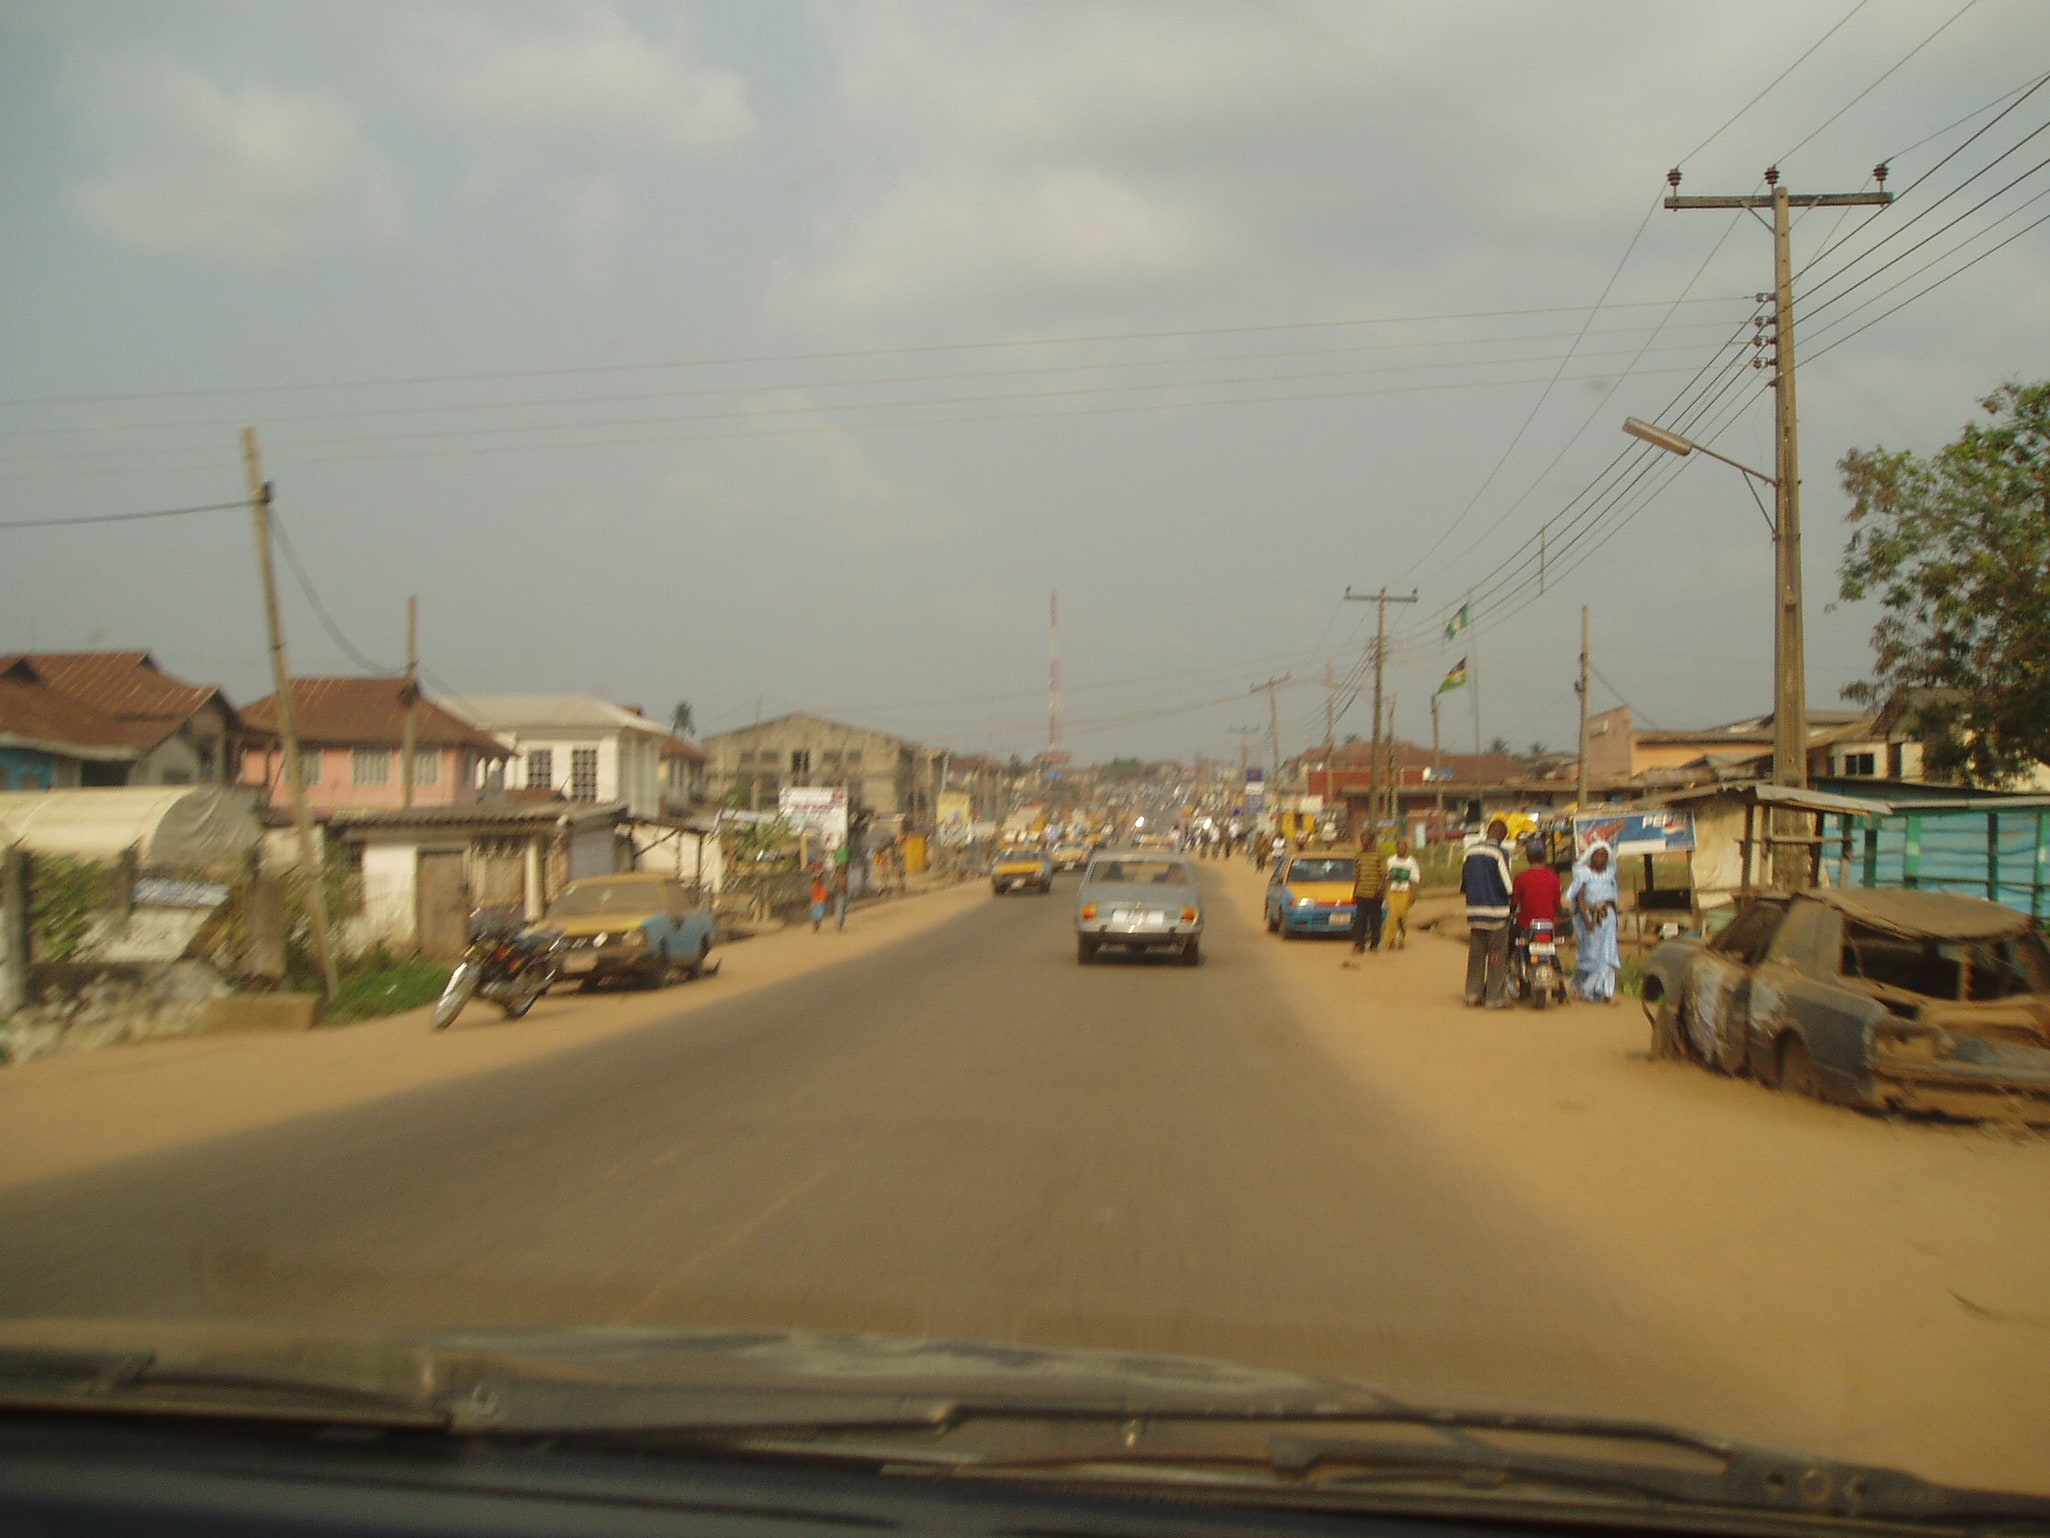 Ondo City, Nigeria